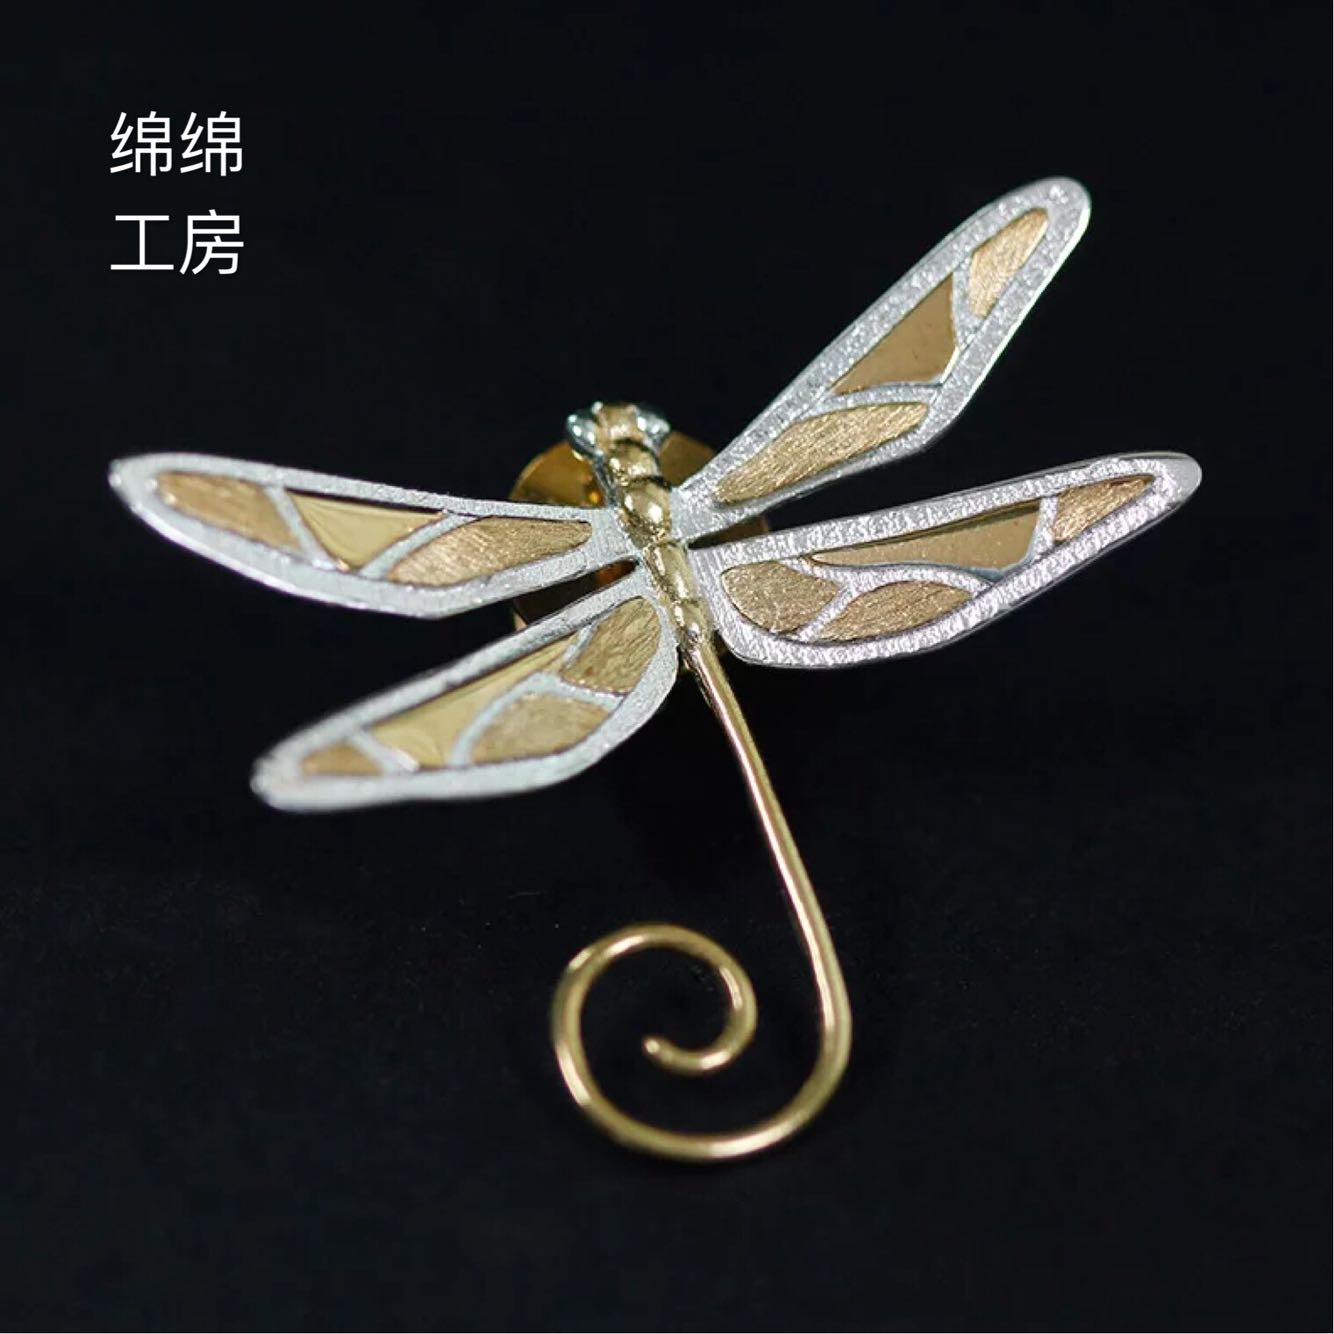 原創 | 純銀飾品立體簡潔蜻蜓胸針 女款 夏季 衣服配飾 領針